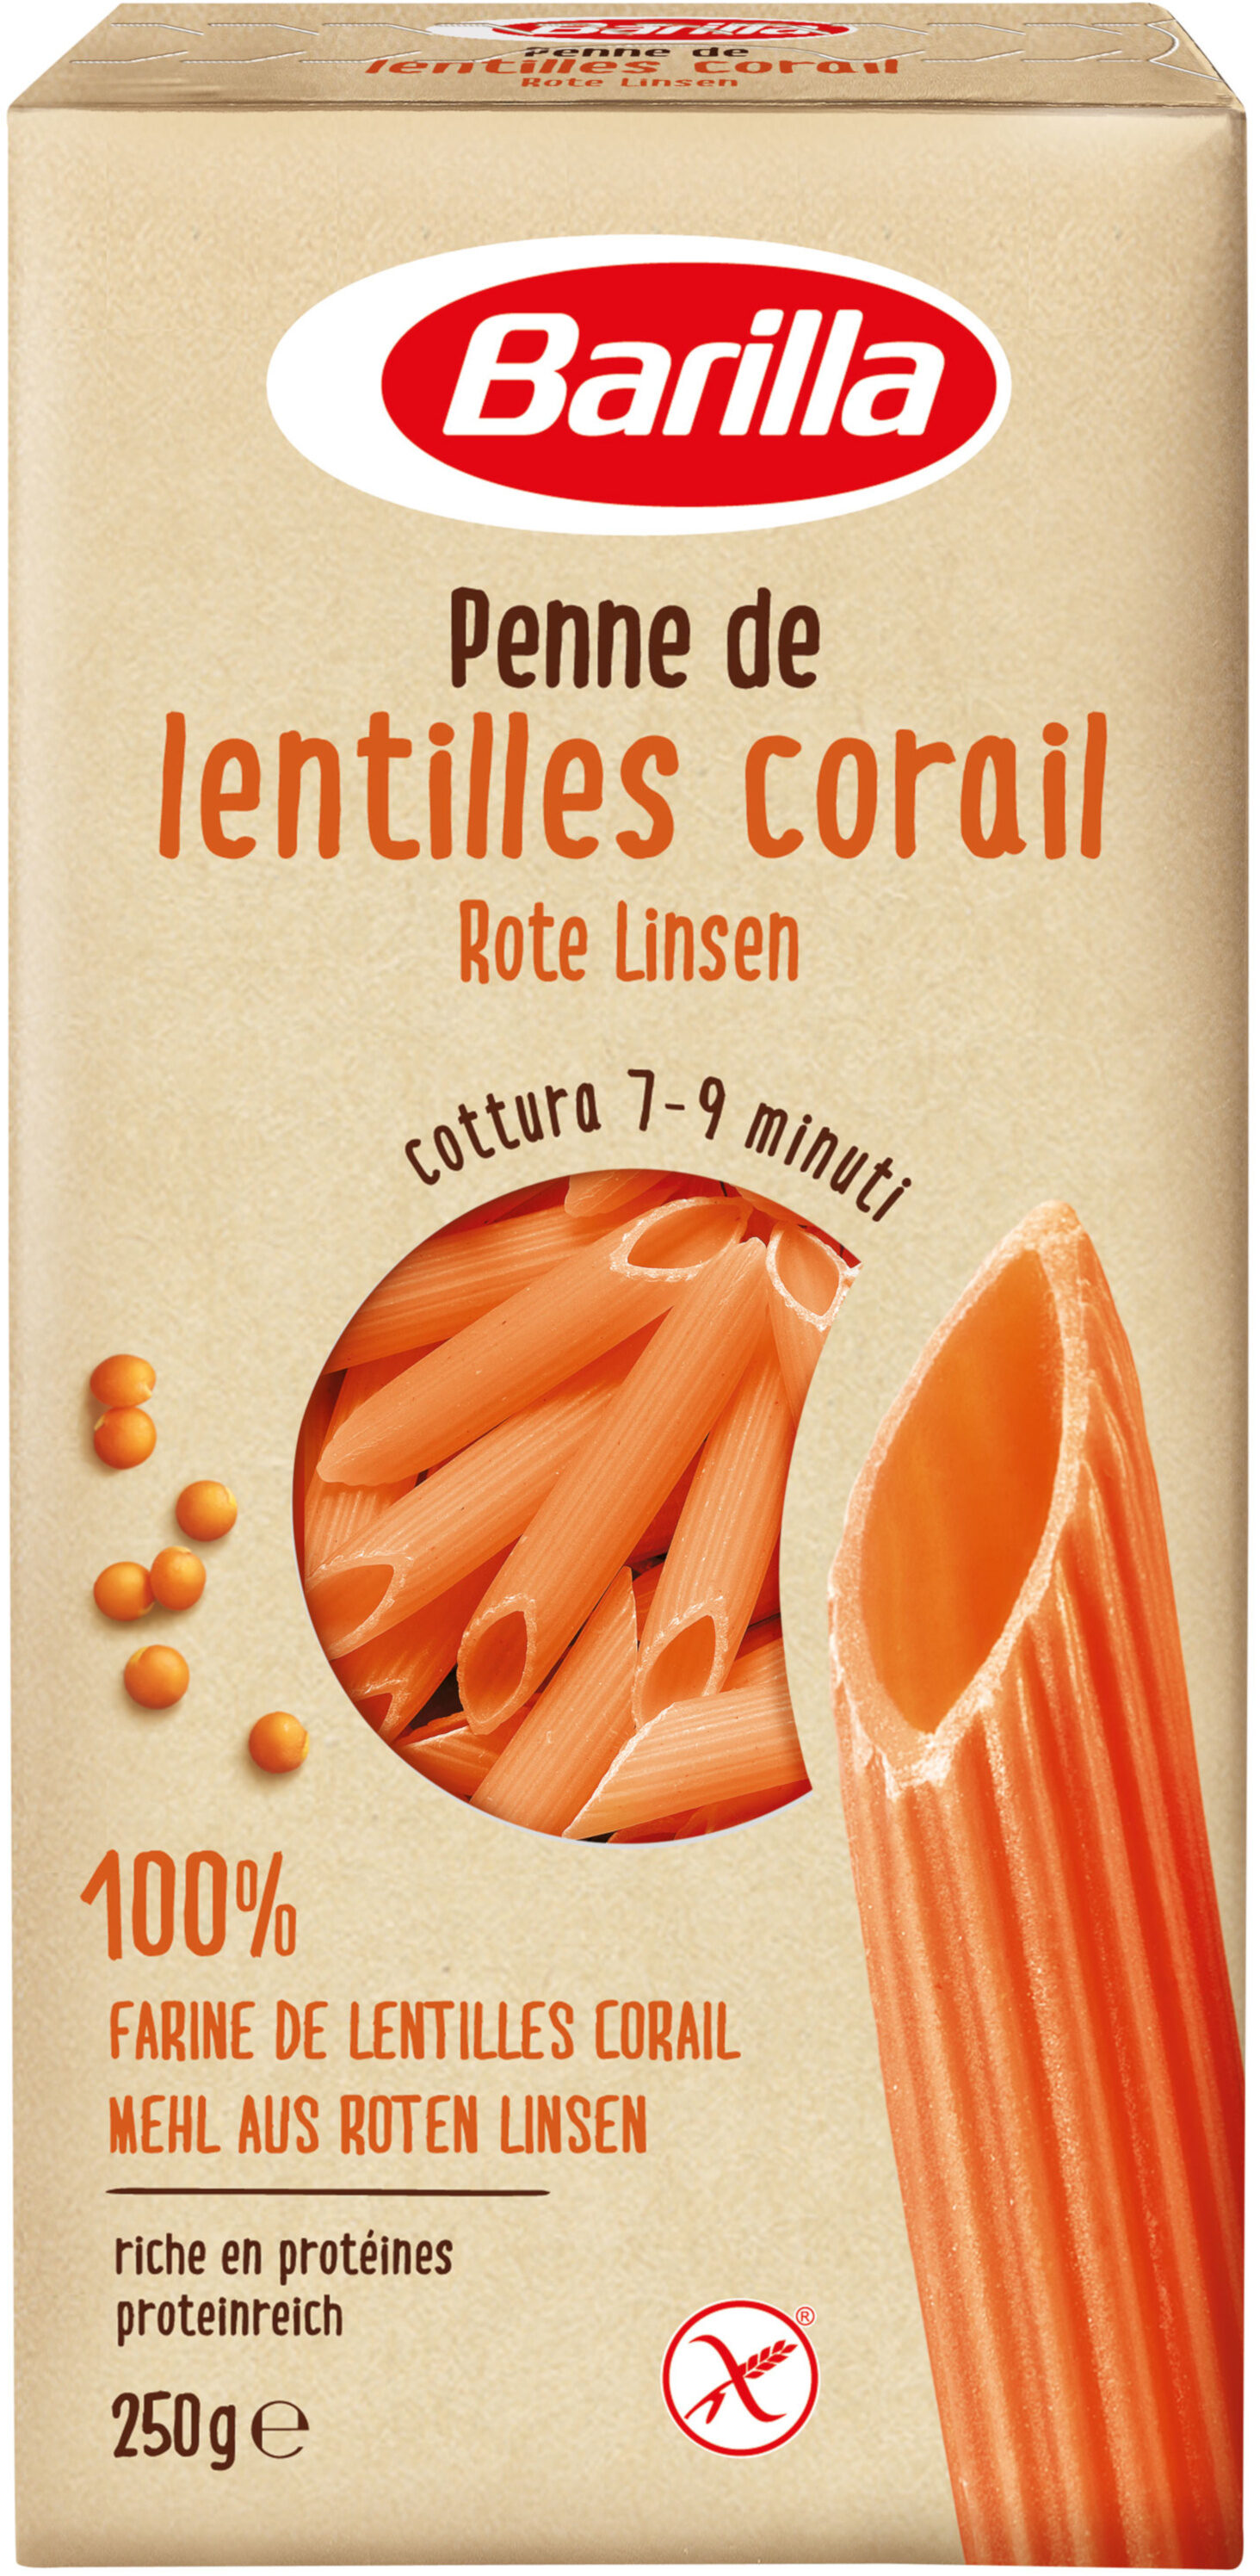 Barilla pates penne de lentilles corail 250g - Produkt - fr